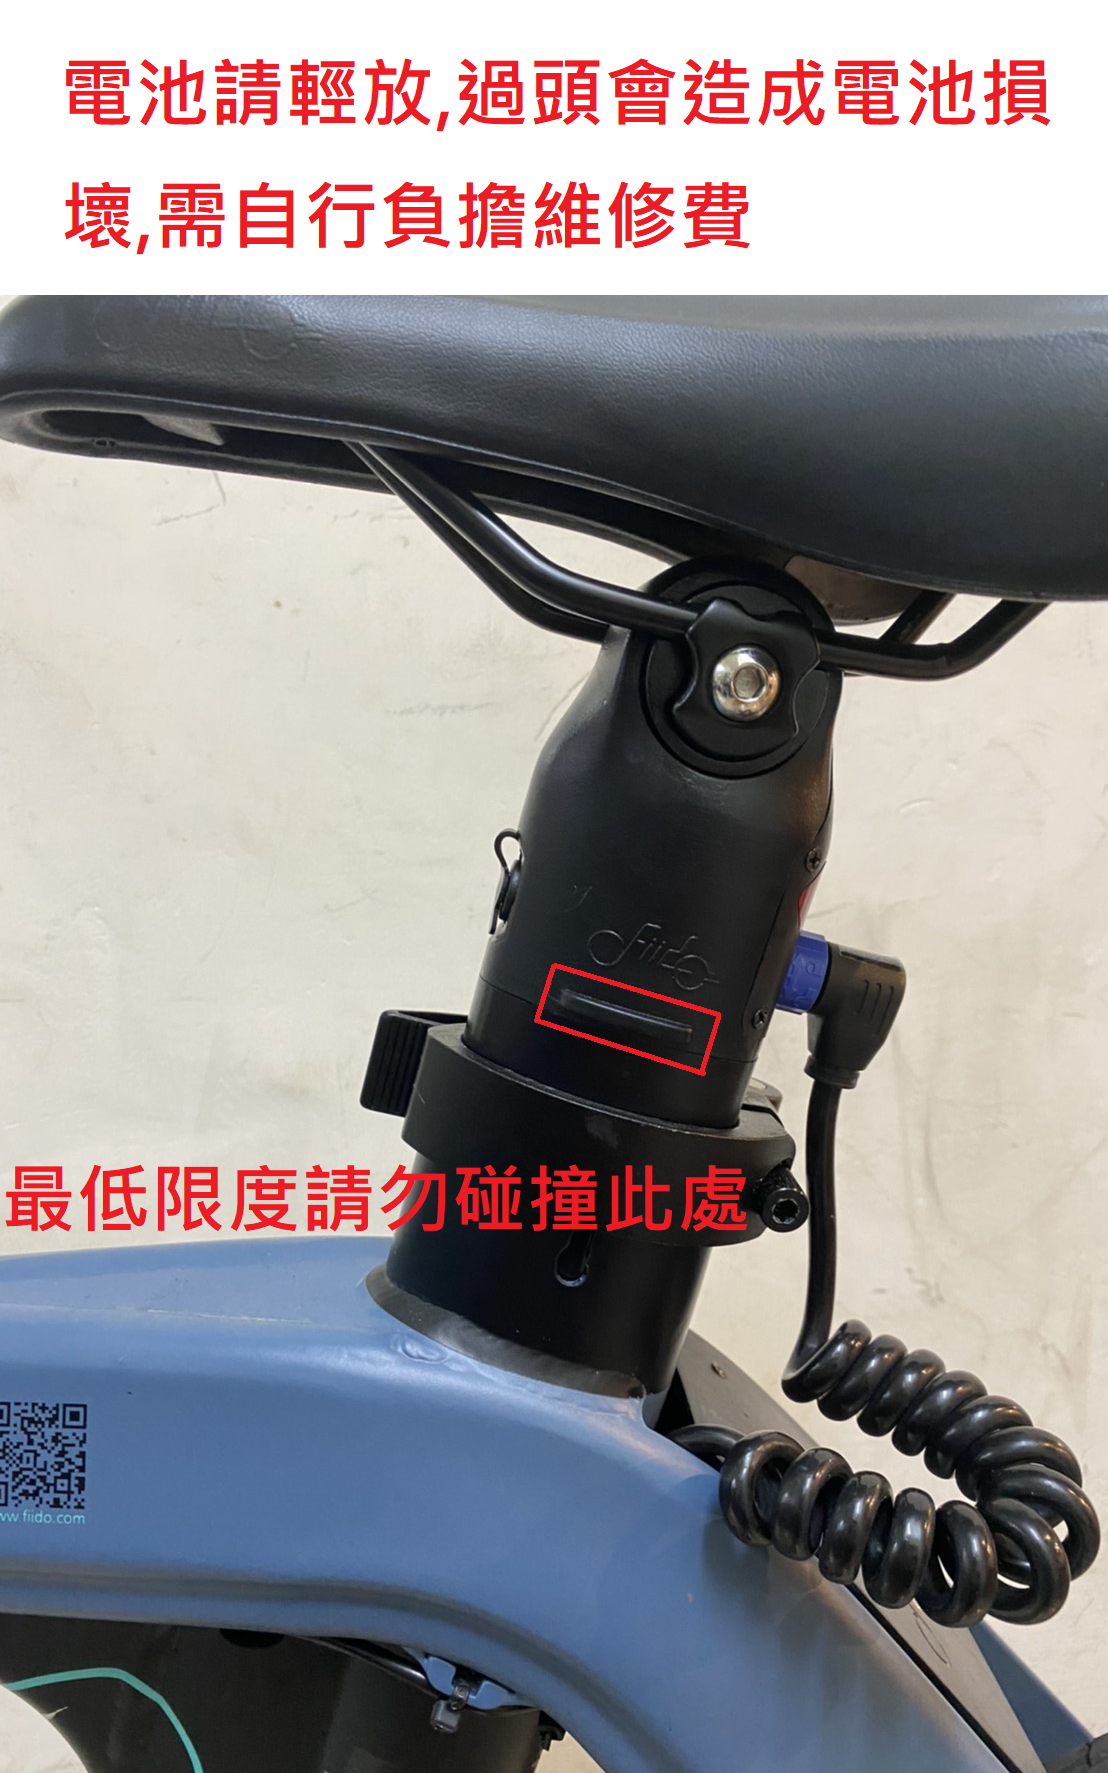 【趣嘢】D11電動摺疊自行車 100km續航 (電動腳踏車/電動自行車)